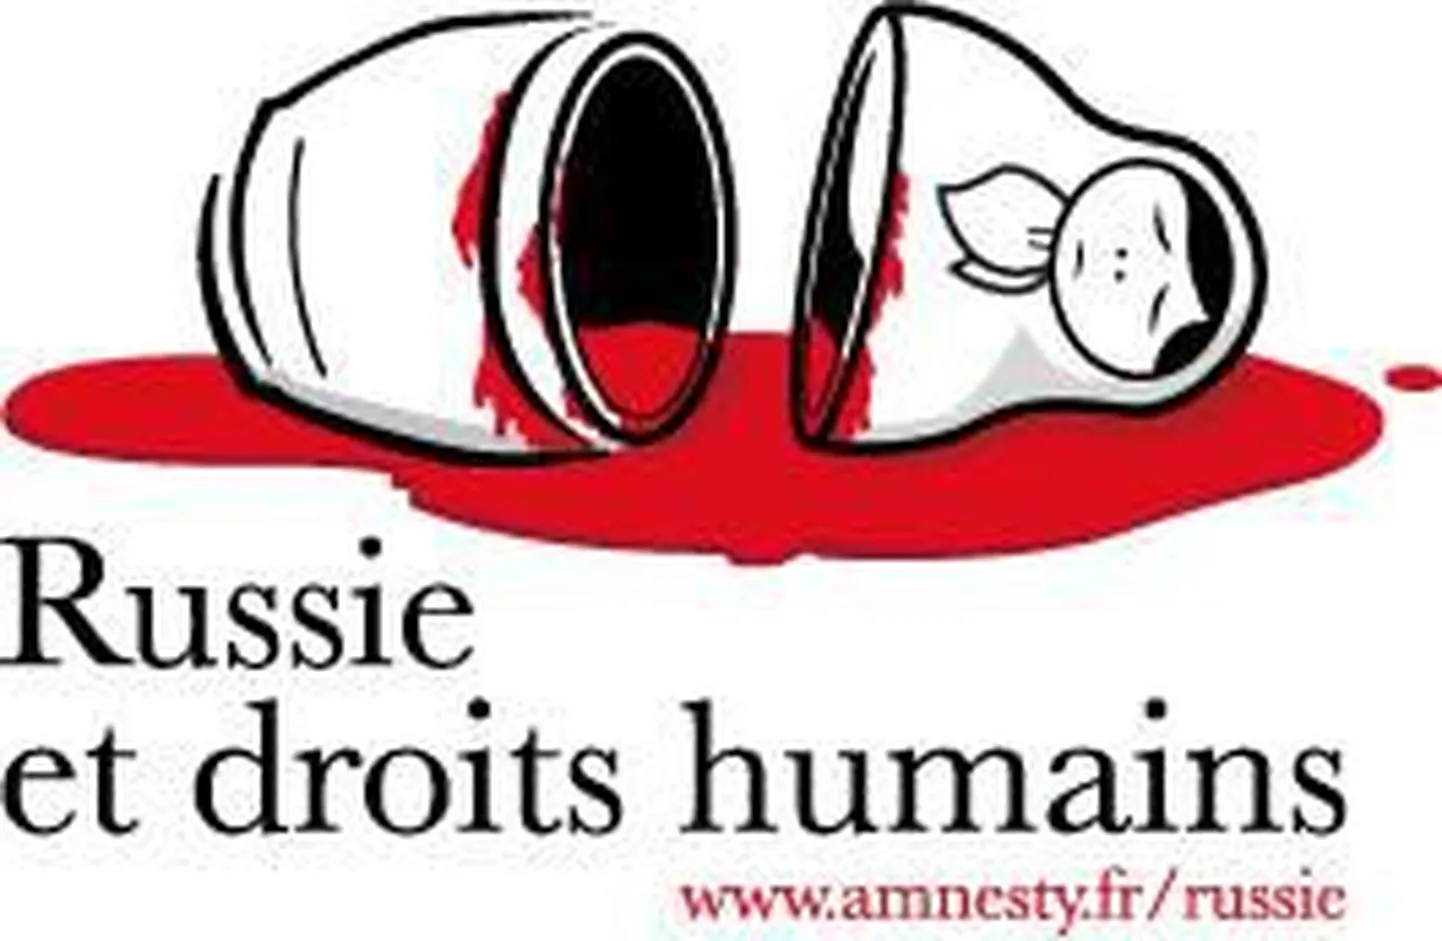 Логотип рекламной кампании Amnesty International France, призывающей обратить внимание на нарушение прав человека в России